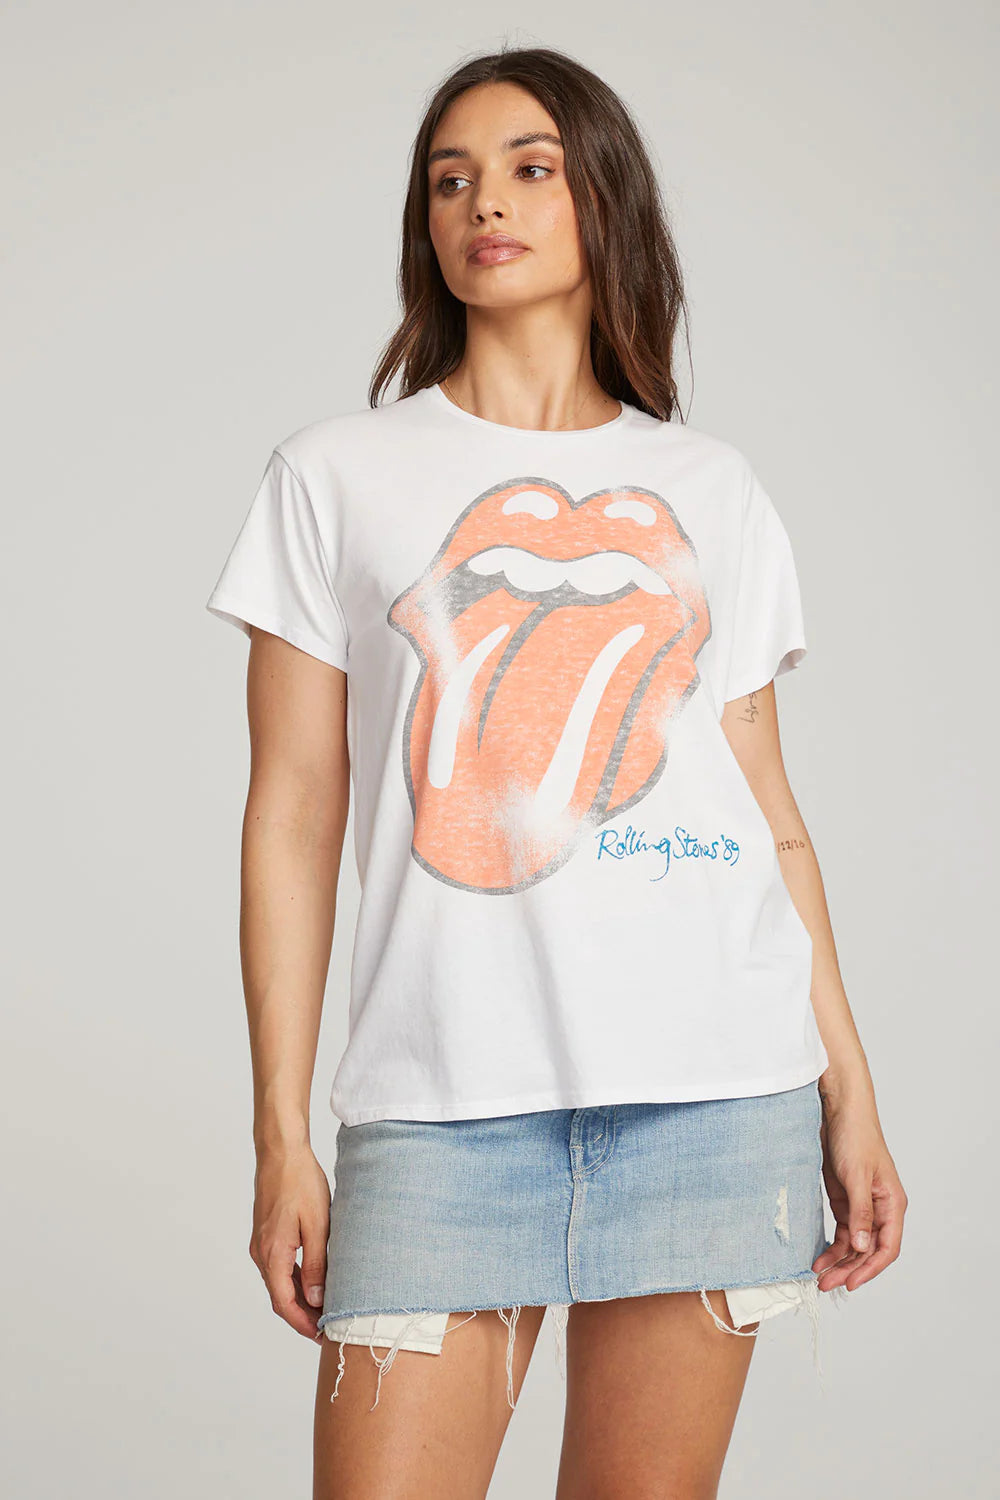 Rolling Stones Tee